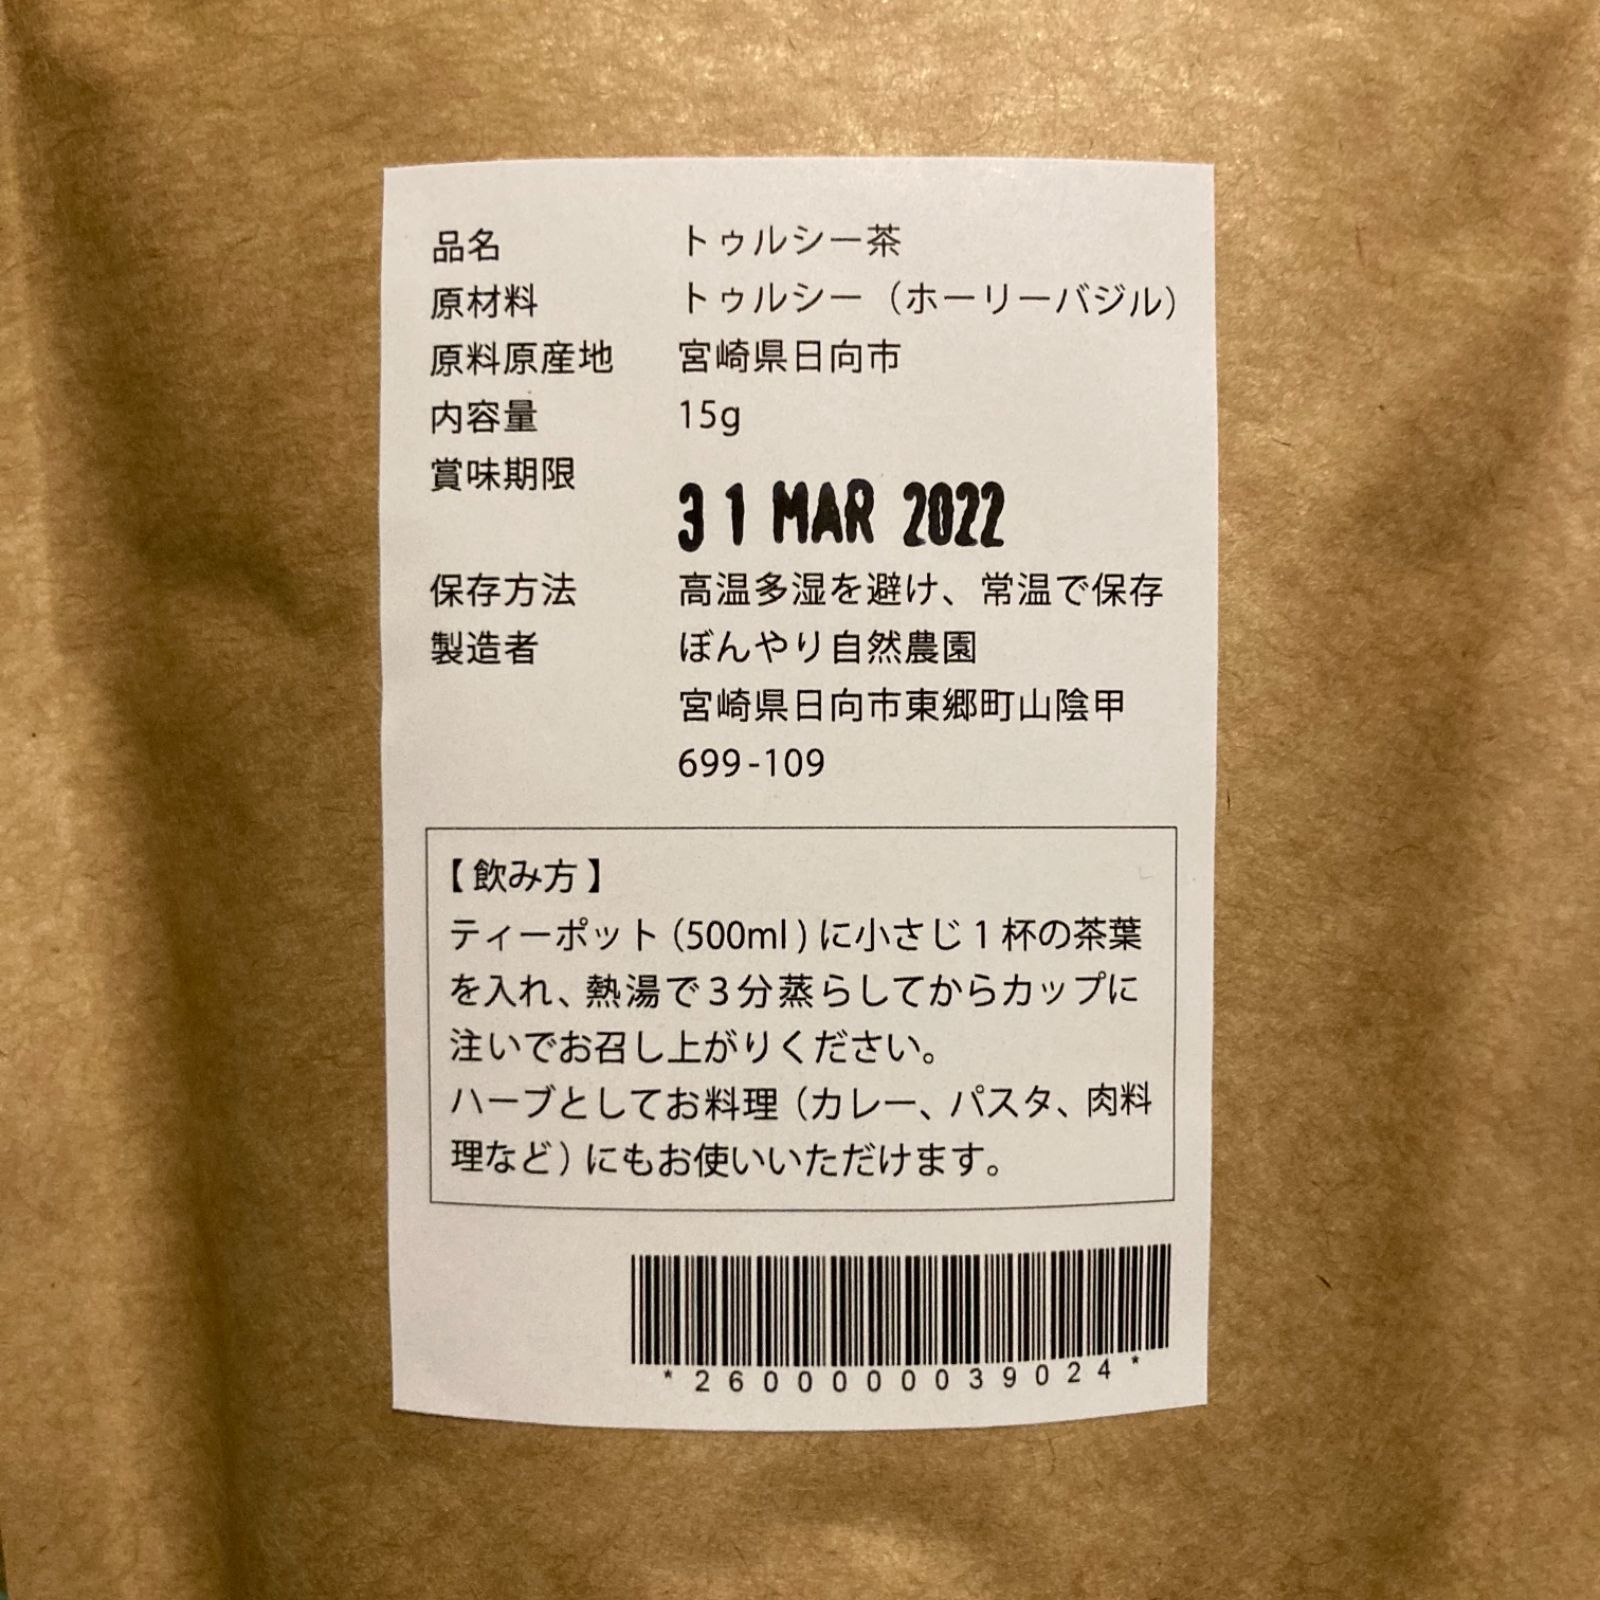 トゥルシー茶 15g × 4袋 ホーリーバジル